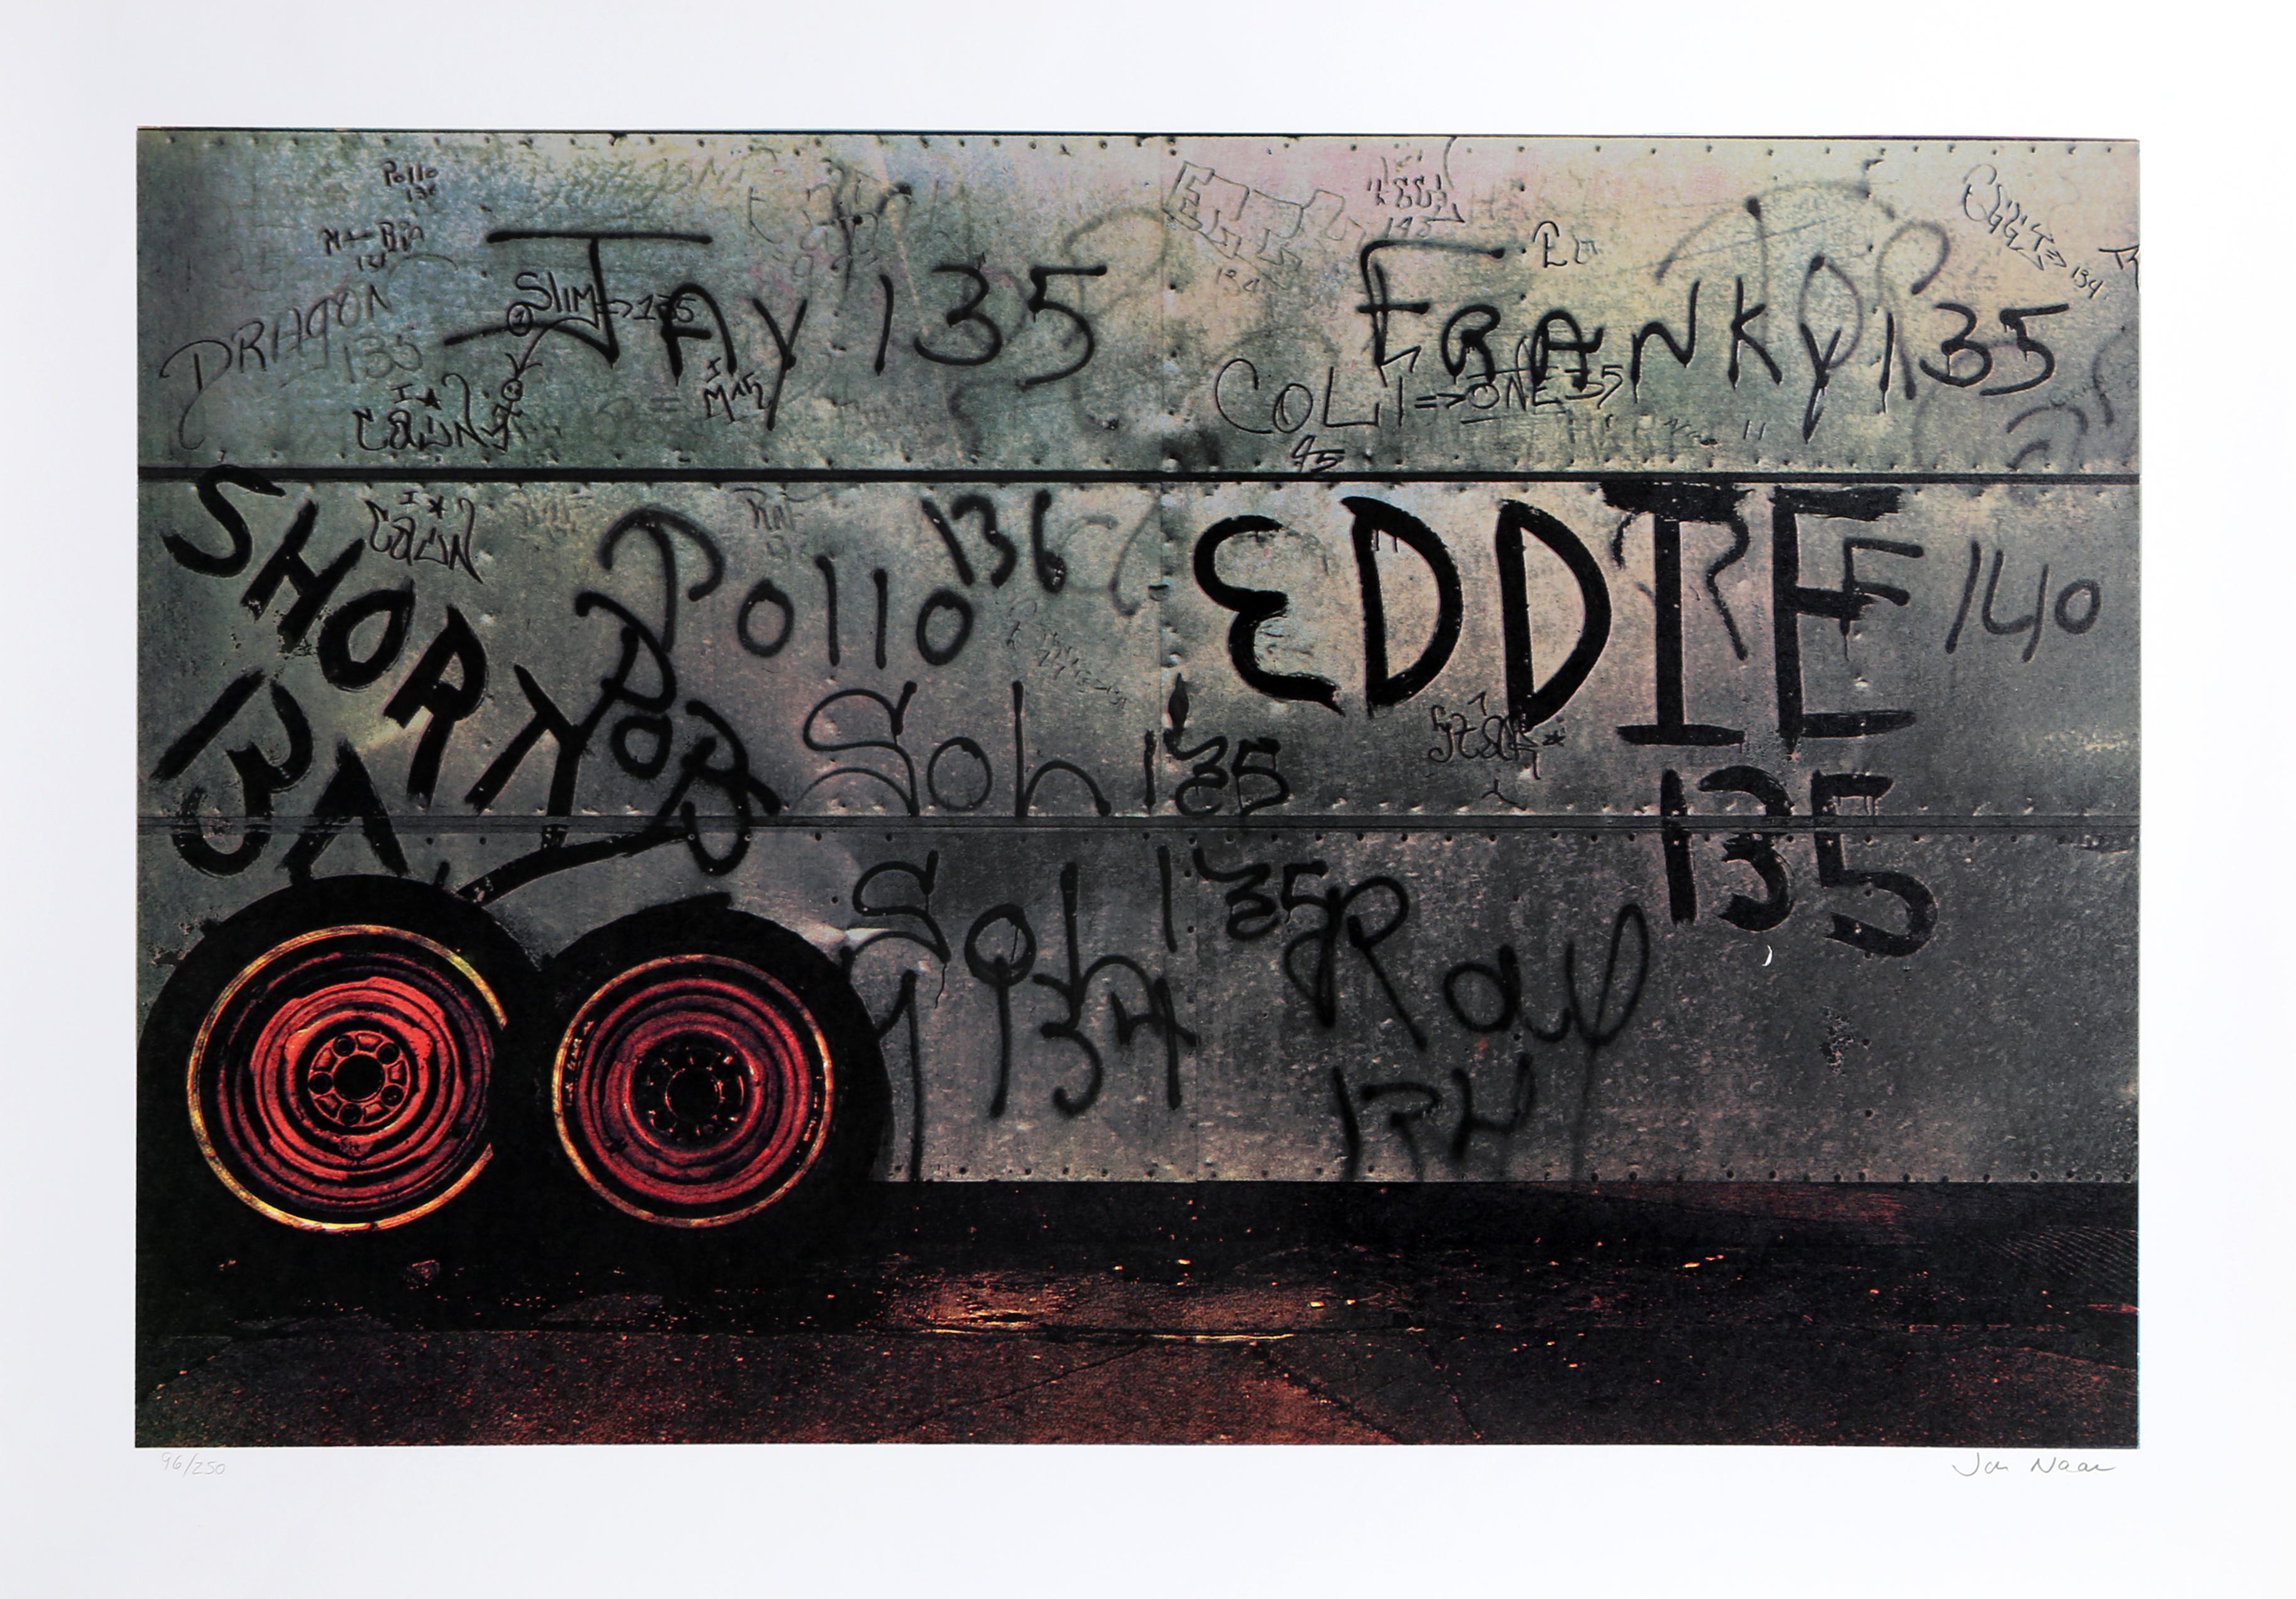 Künstler: Jon Naar, Brite (1920 -  )
Titel: Eddie von Faith of Graffiti
Jahr: 1974
Medium: Serigraphie, signiert und nummeriert mit Bleistift
Auflage: 250
Größe: 24,5 x 34 Zoll

Gedruckt bei Circle Press, Chicago
Veröffentlicht von Documentary